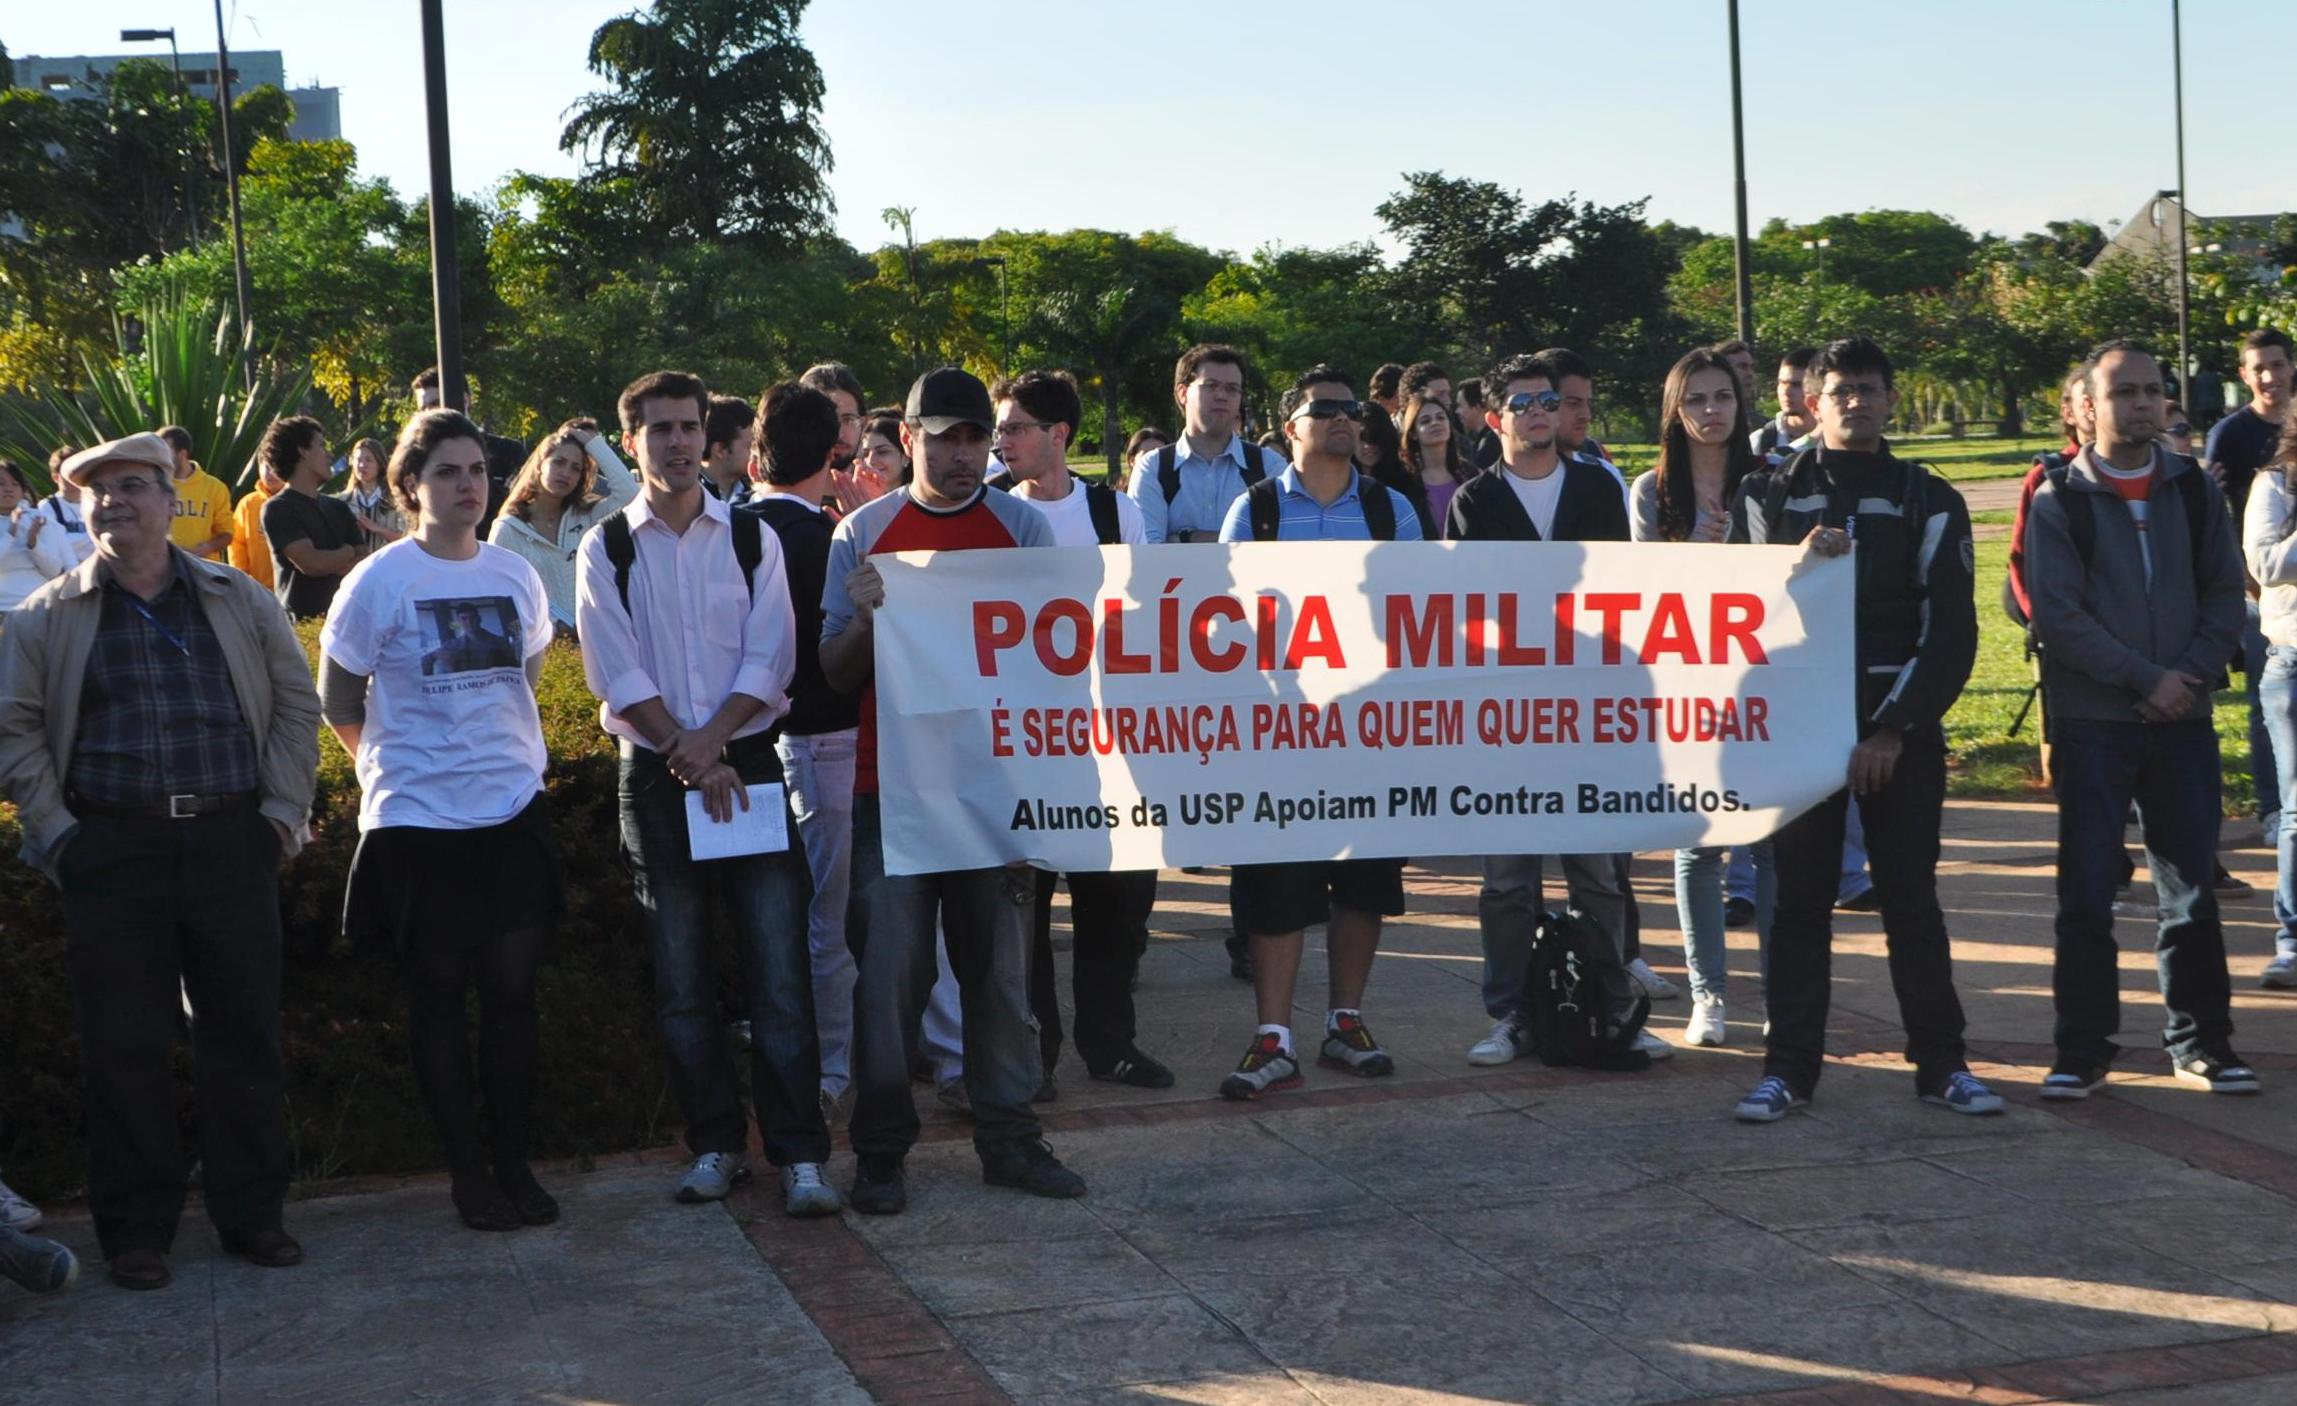 Ato na Praça do Relógio contou com cerca de 250 alunos a favor da PM (Beatriz Montessanti)